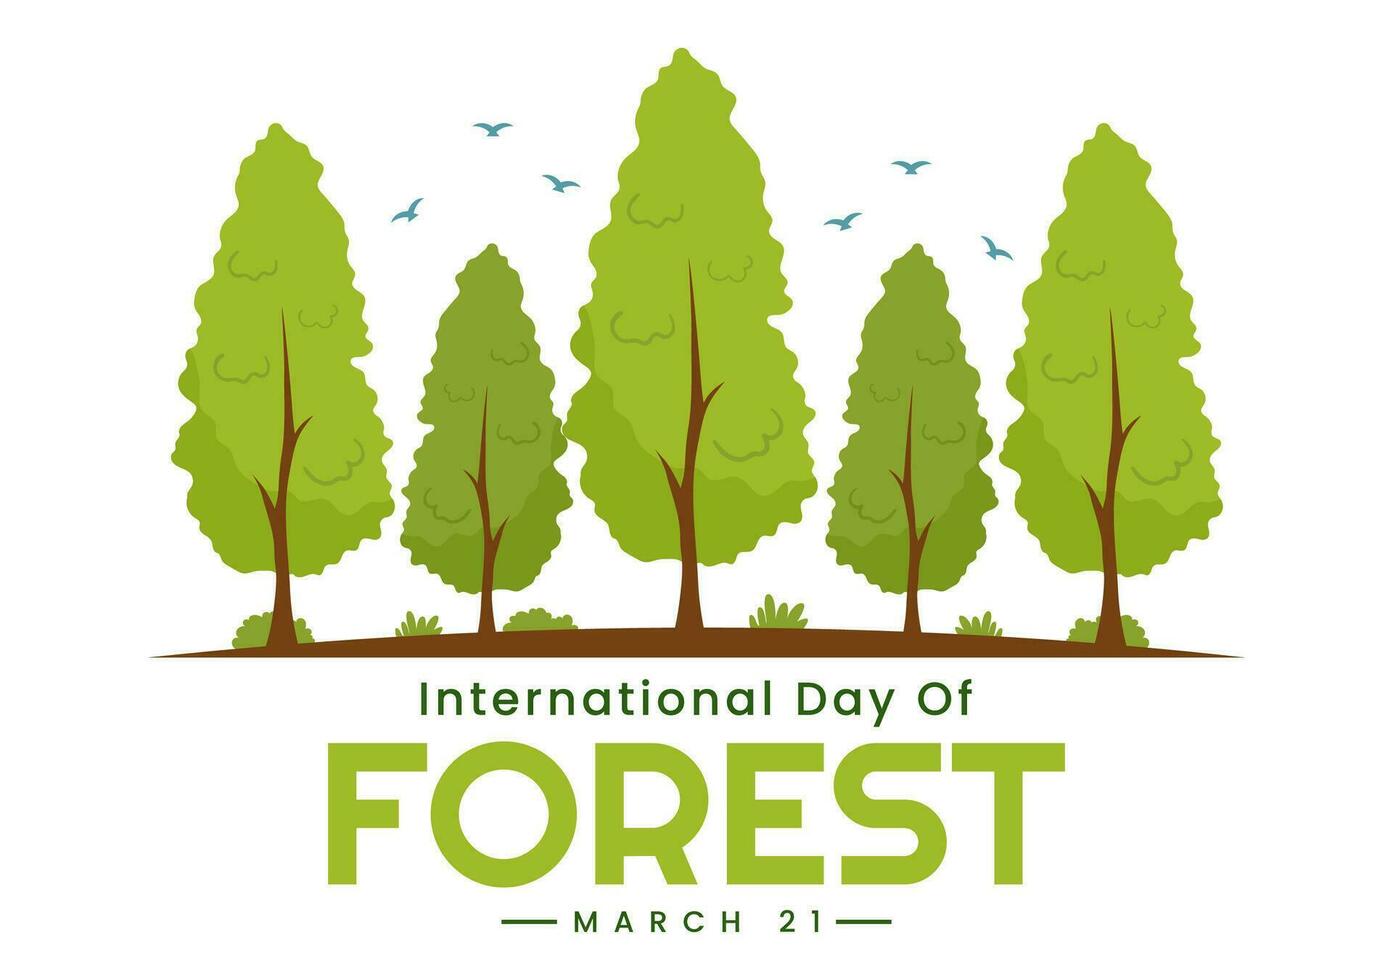 internationell skog dag vektor illustration på 21 Mars med växter, träd, grön fält och olika vilda djur och växter till ekonomisk skogsbruk i bakgrund